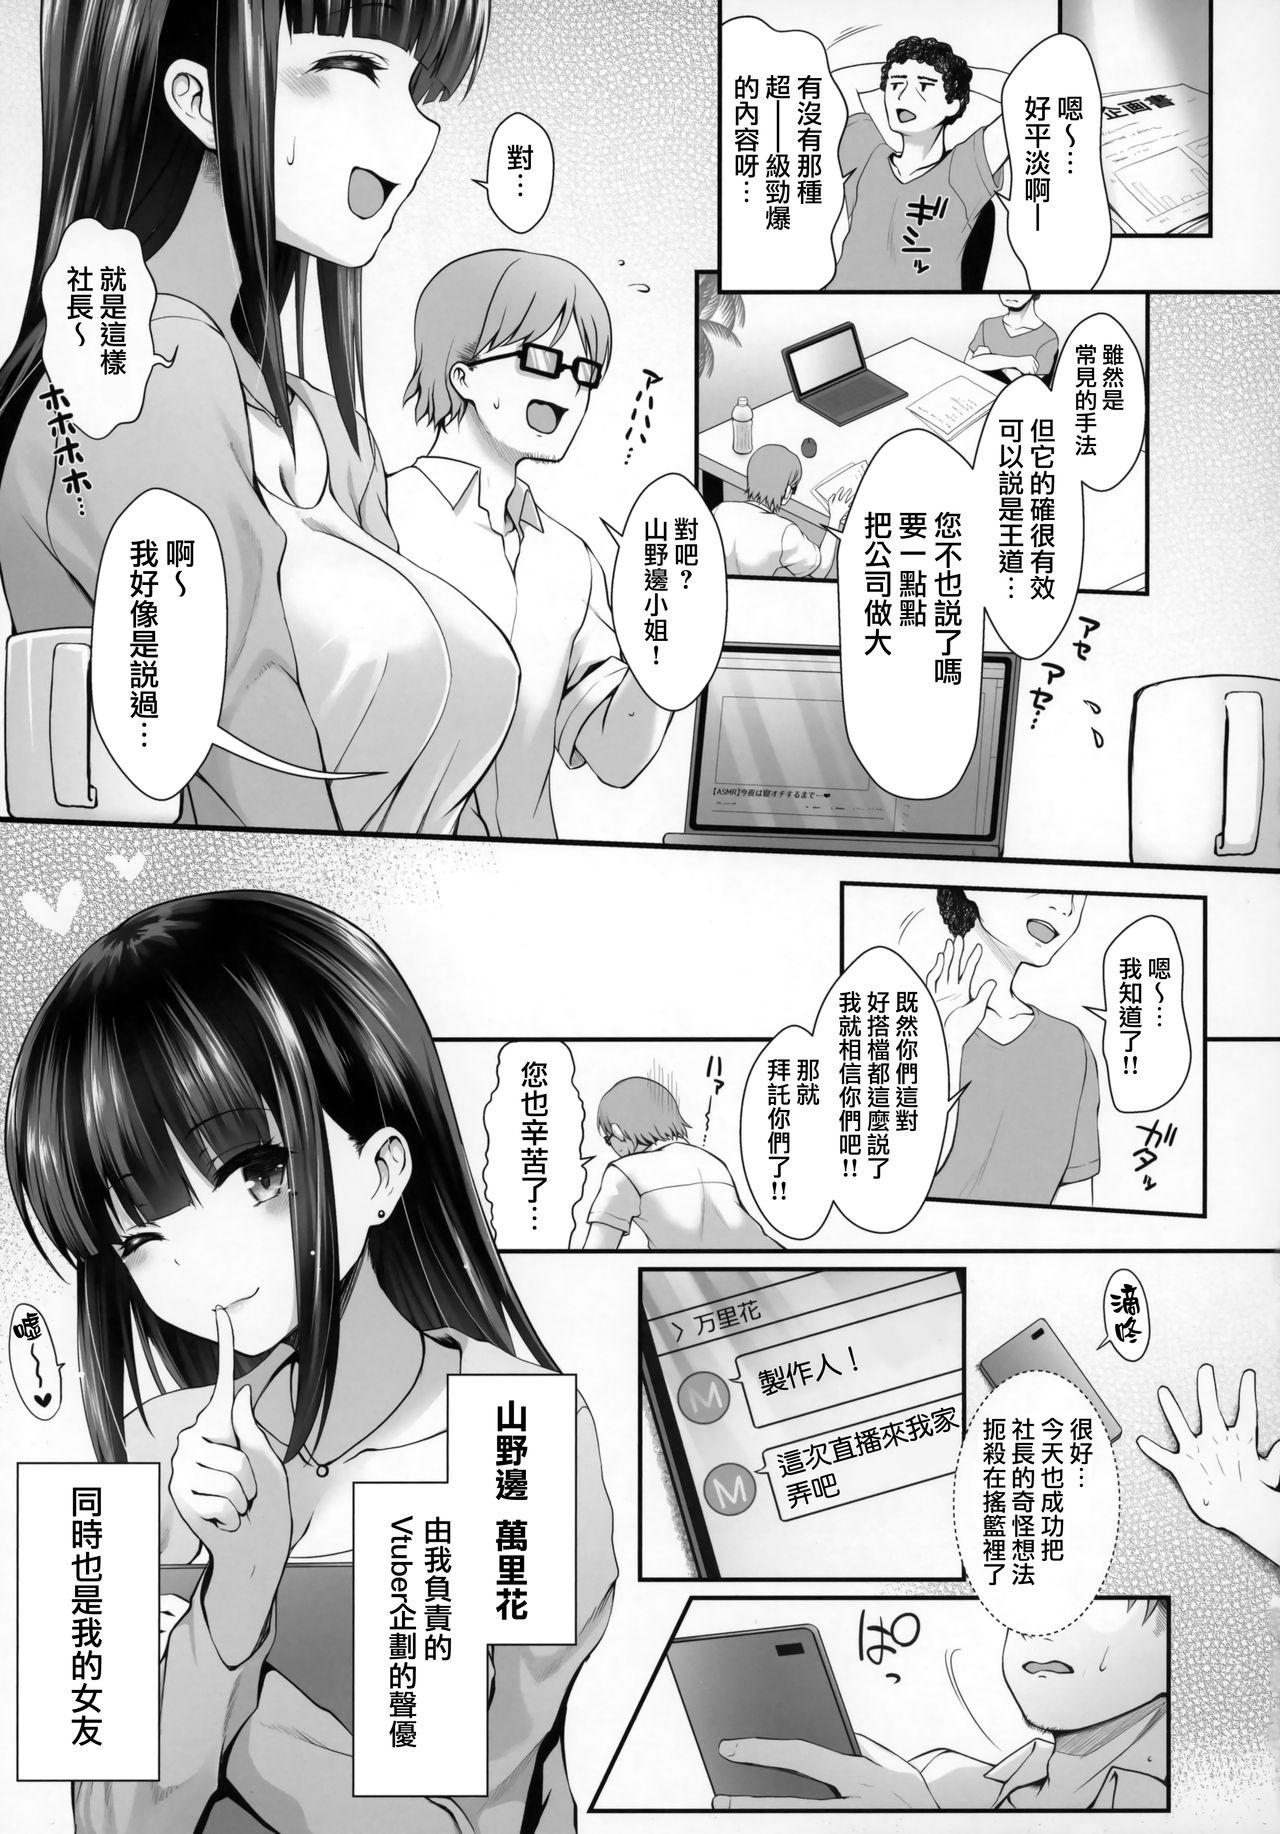 Analfucking Ore no Kanojo wa Virtual no Mono - Original Buceta - Page 4